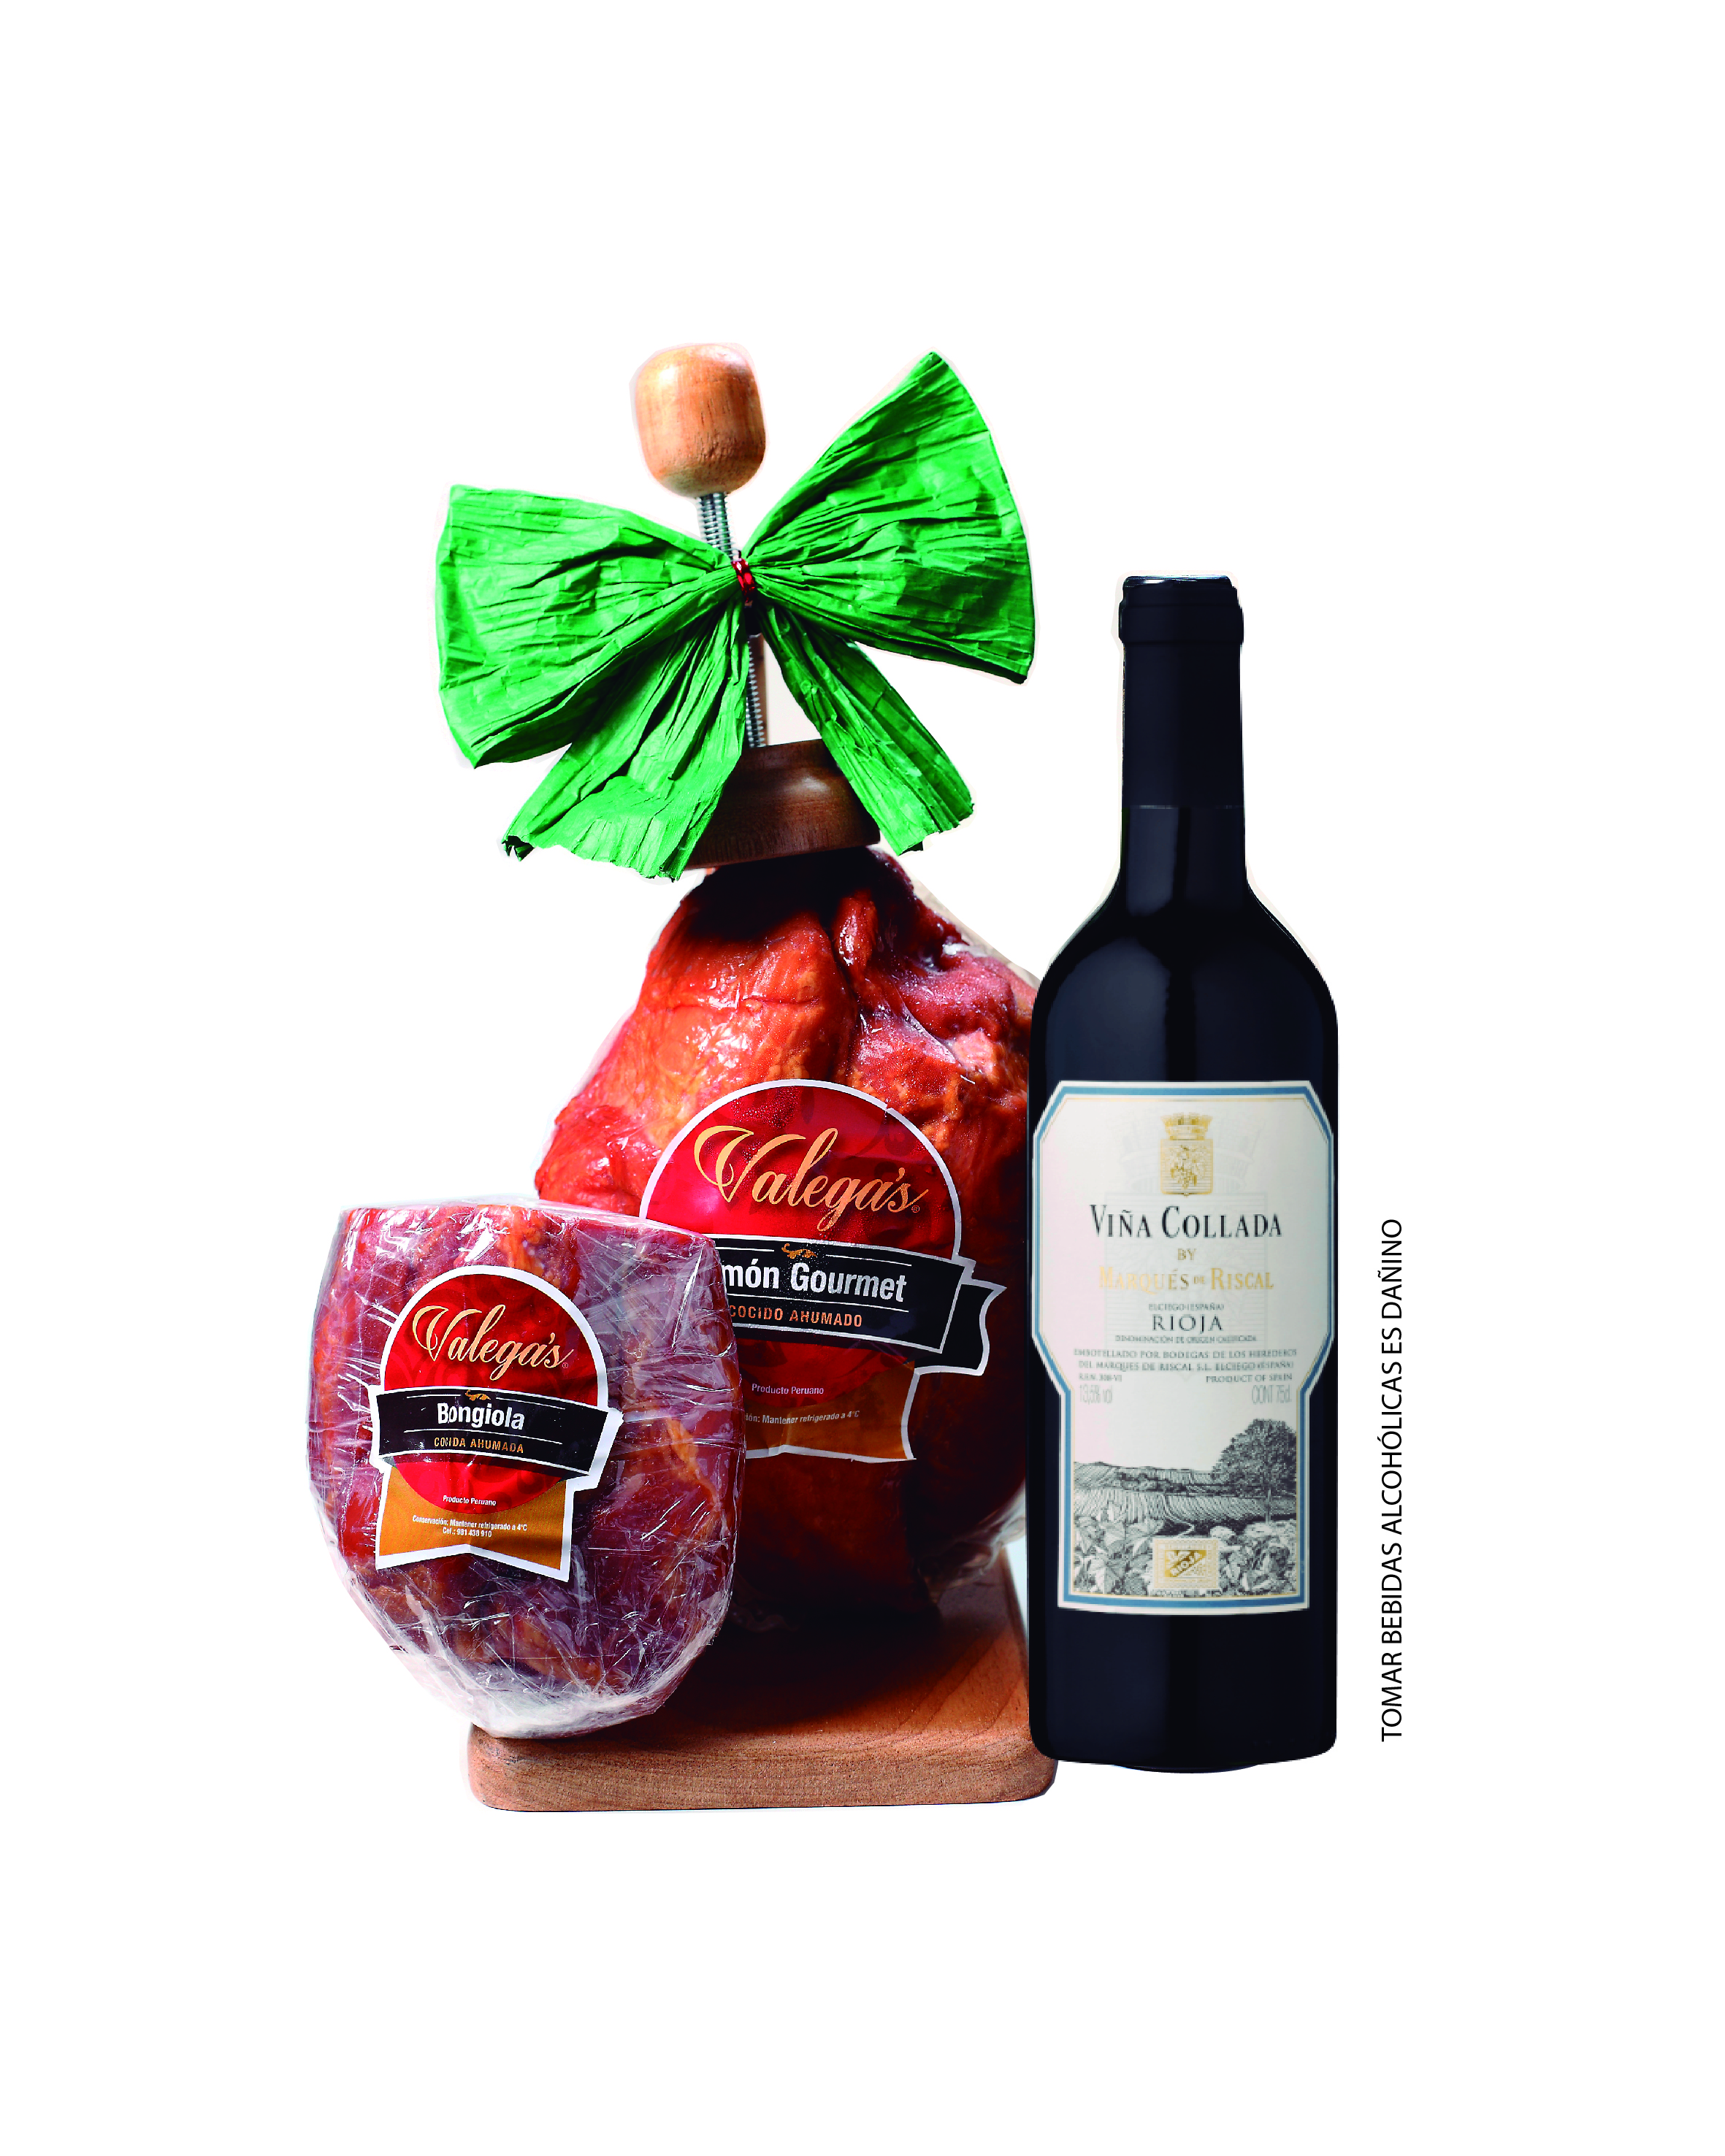 Jamón Gourmet de 2.4 kg aprox. Incluye parador de madera acompañado por un vino Rioja de Marqués del Riscal y una bongiola de 600gr. El vino puede variar sujeto a stock. 
